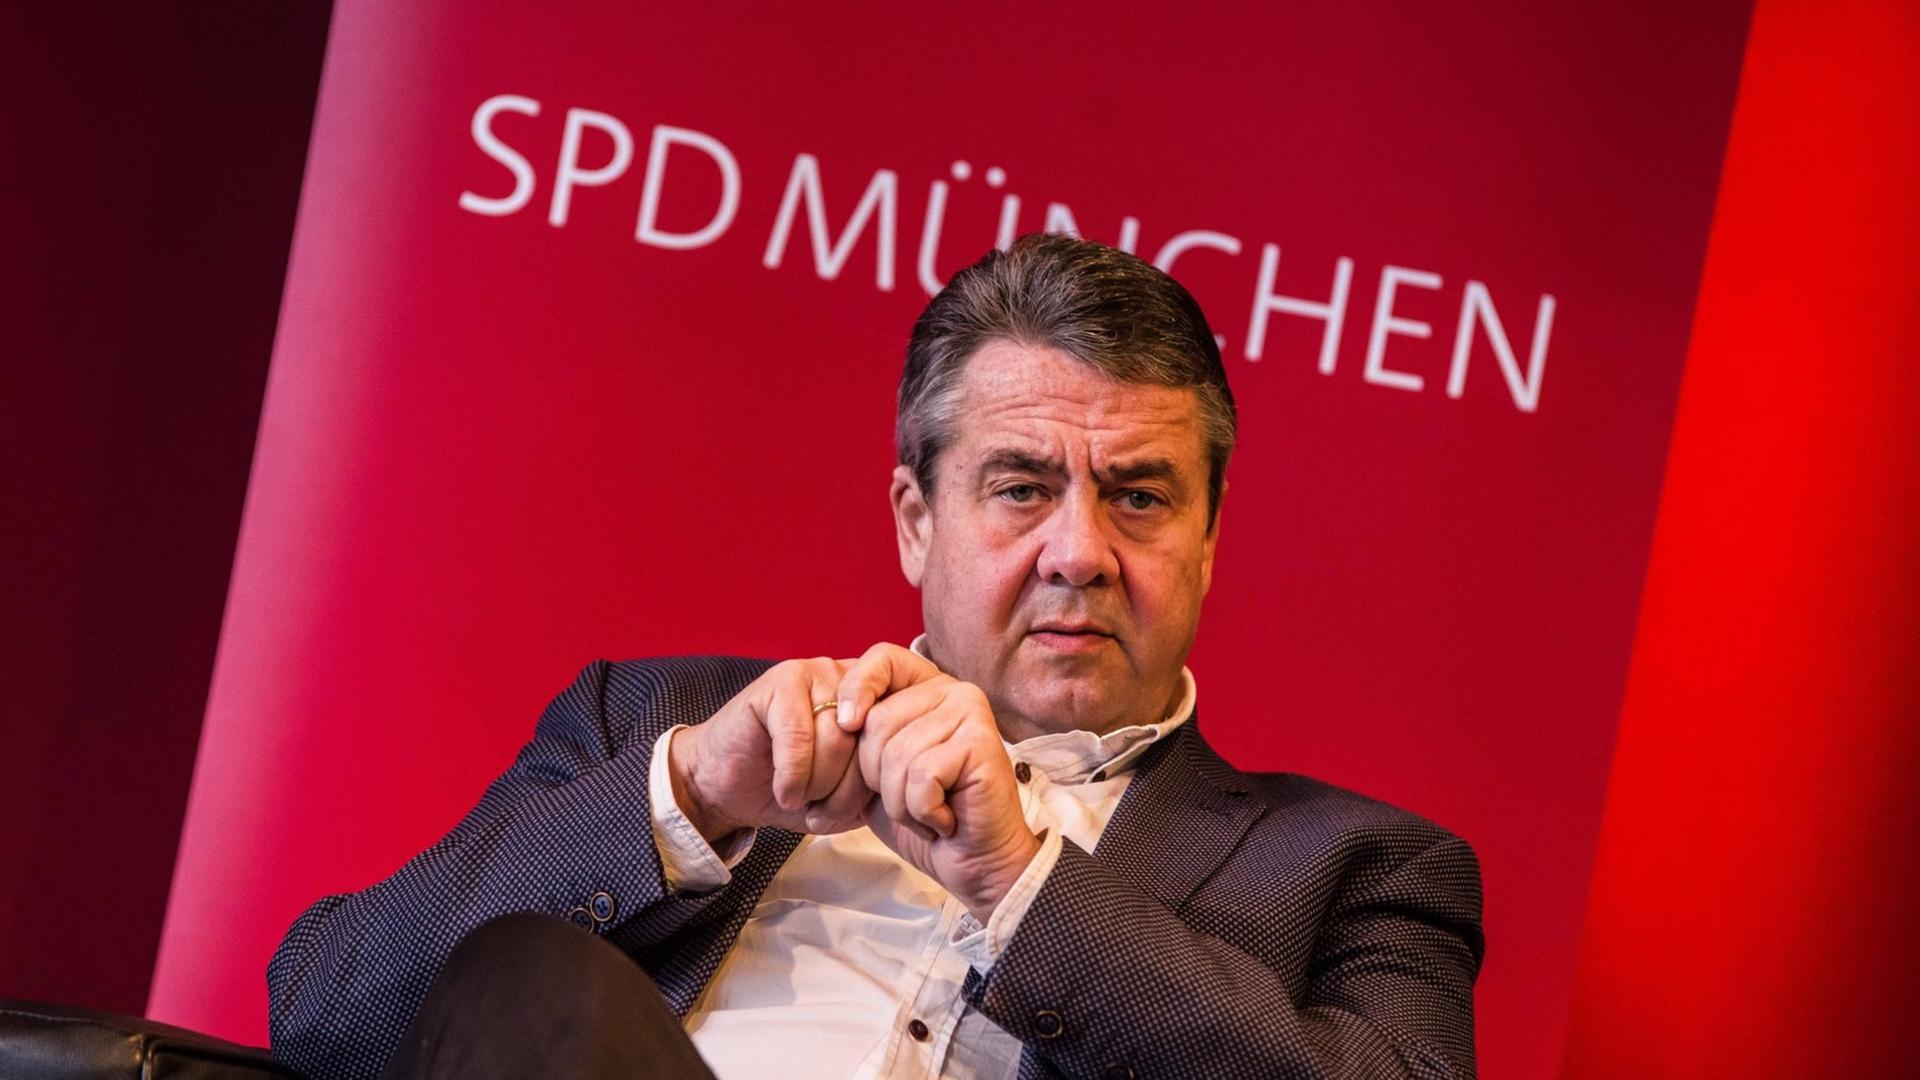 Der frühere SPD-Chef Sigmar Gabriel spricht auf einer Veranstaltung im Münchner Literaturhaus